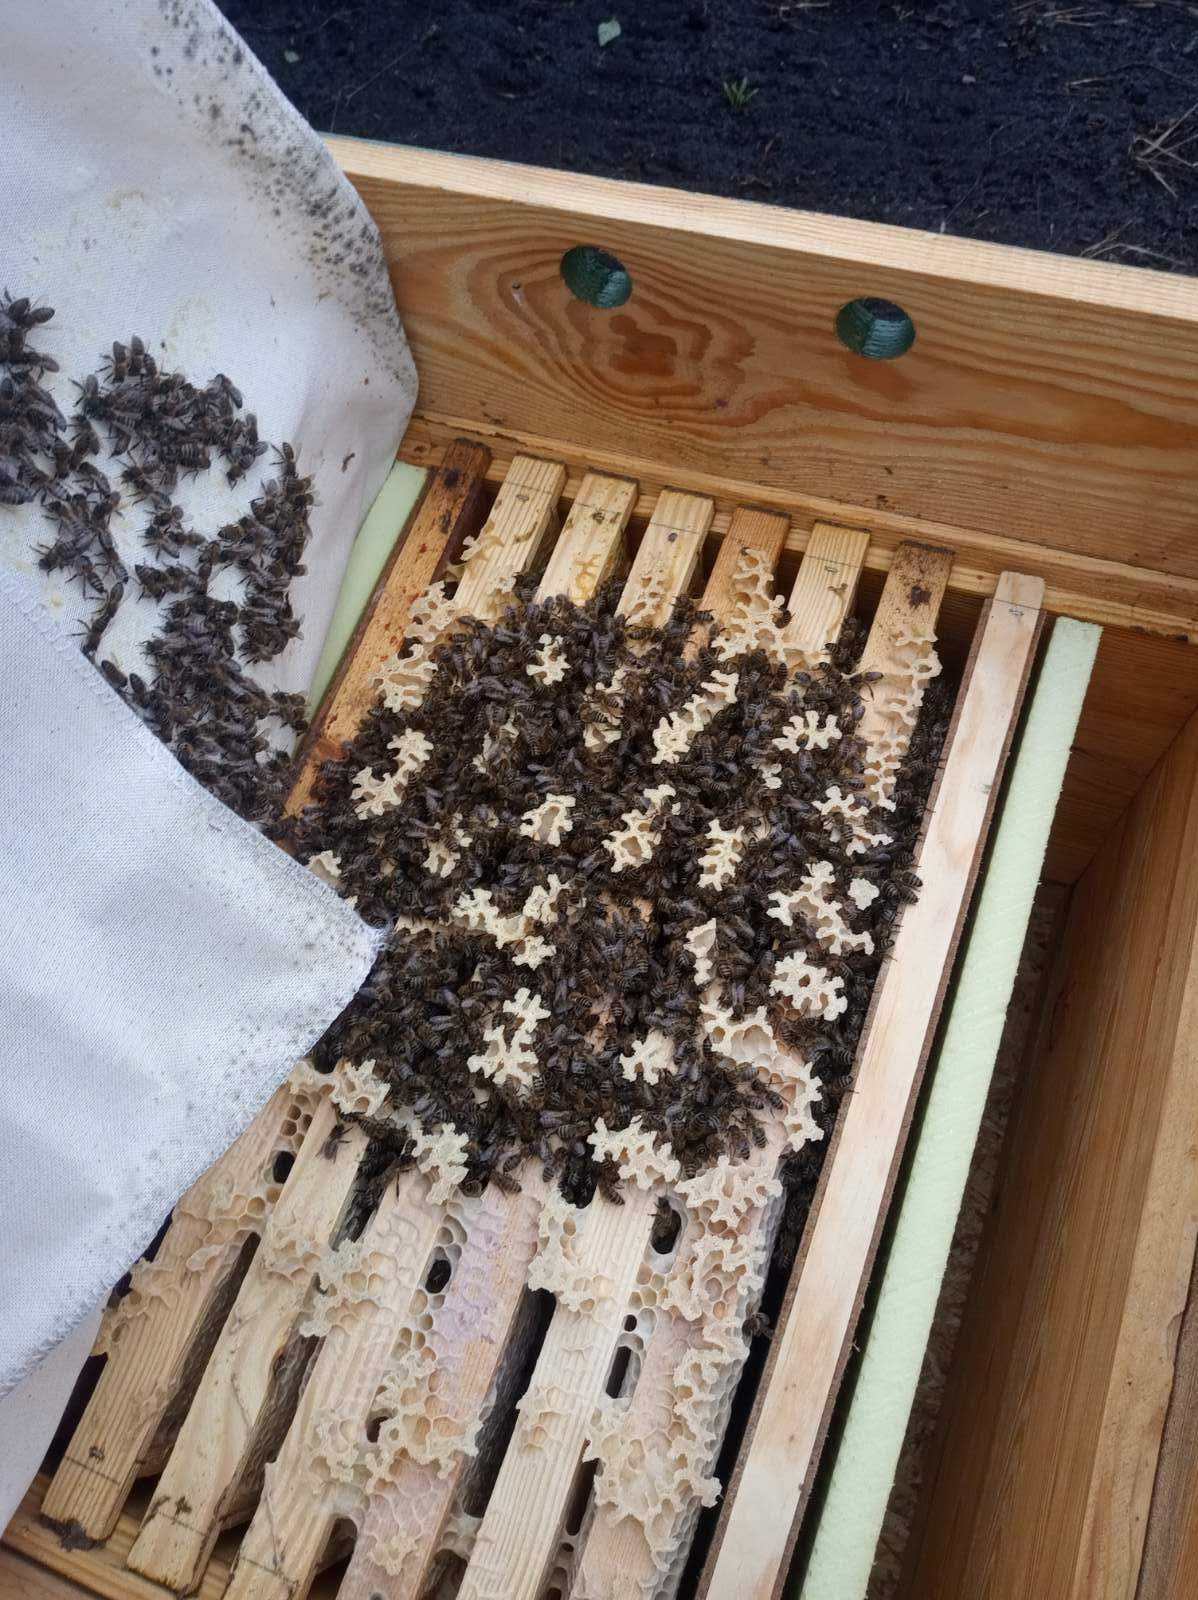 Бджолопакети пчелопакеты пчел  із своєї пасіки в наявності